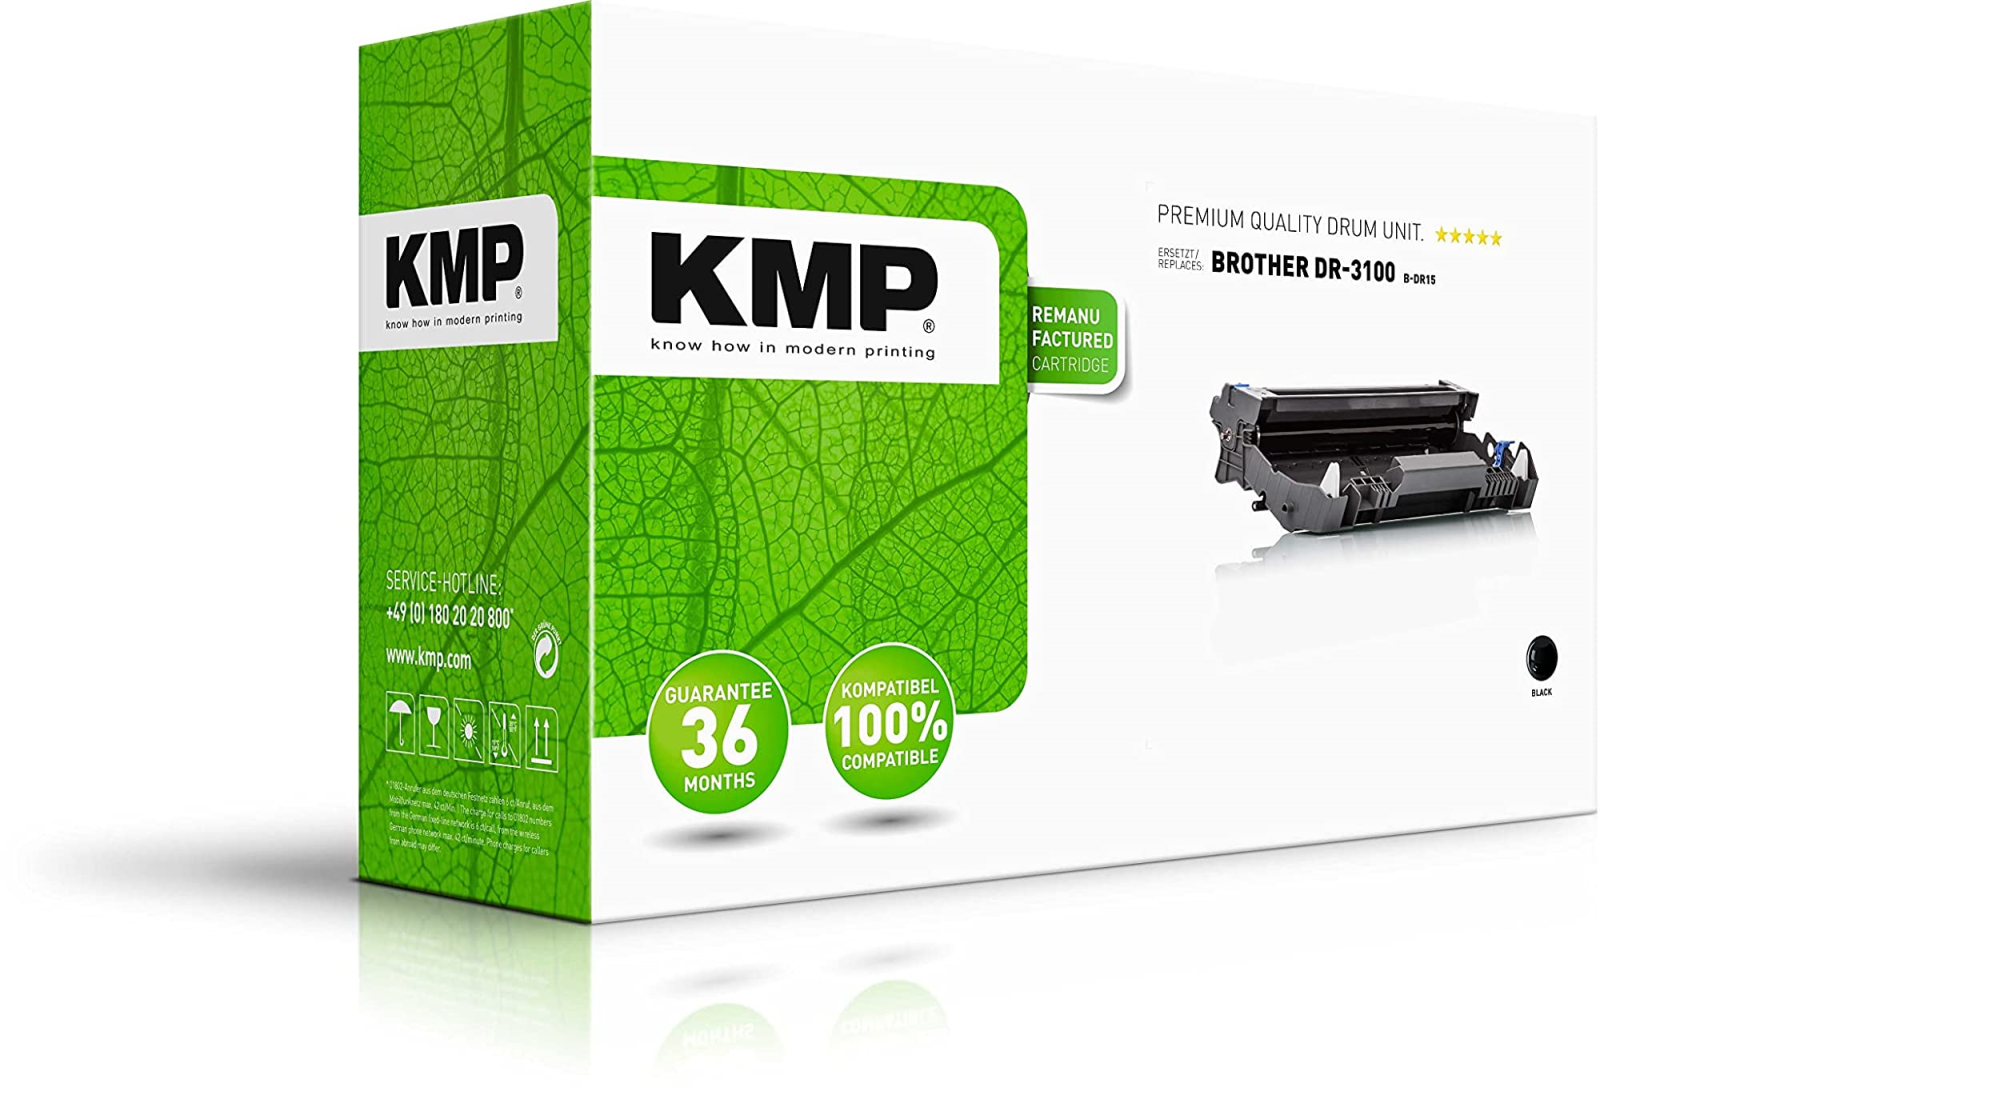 Merchandising Kmp: Trommel Ers.Broth.Dr-3100 NUOVO SIGILLATO, EDIZIONE DEL 31/01/2018 SUBITO DISPONIBILE